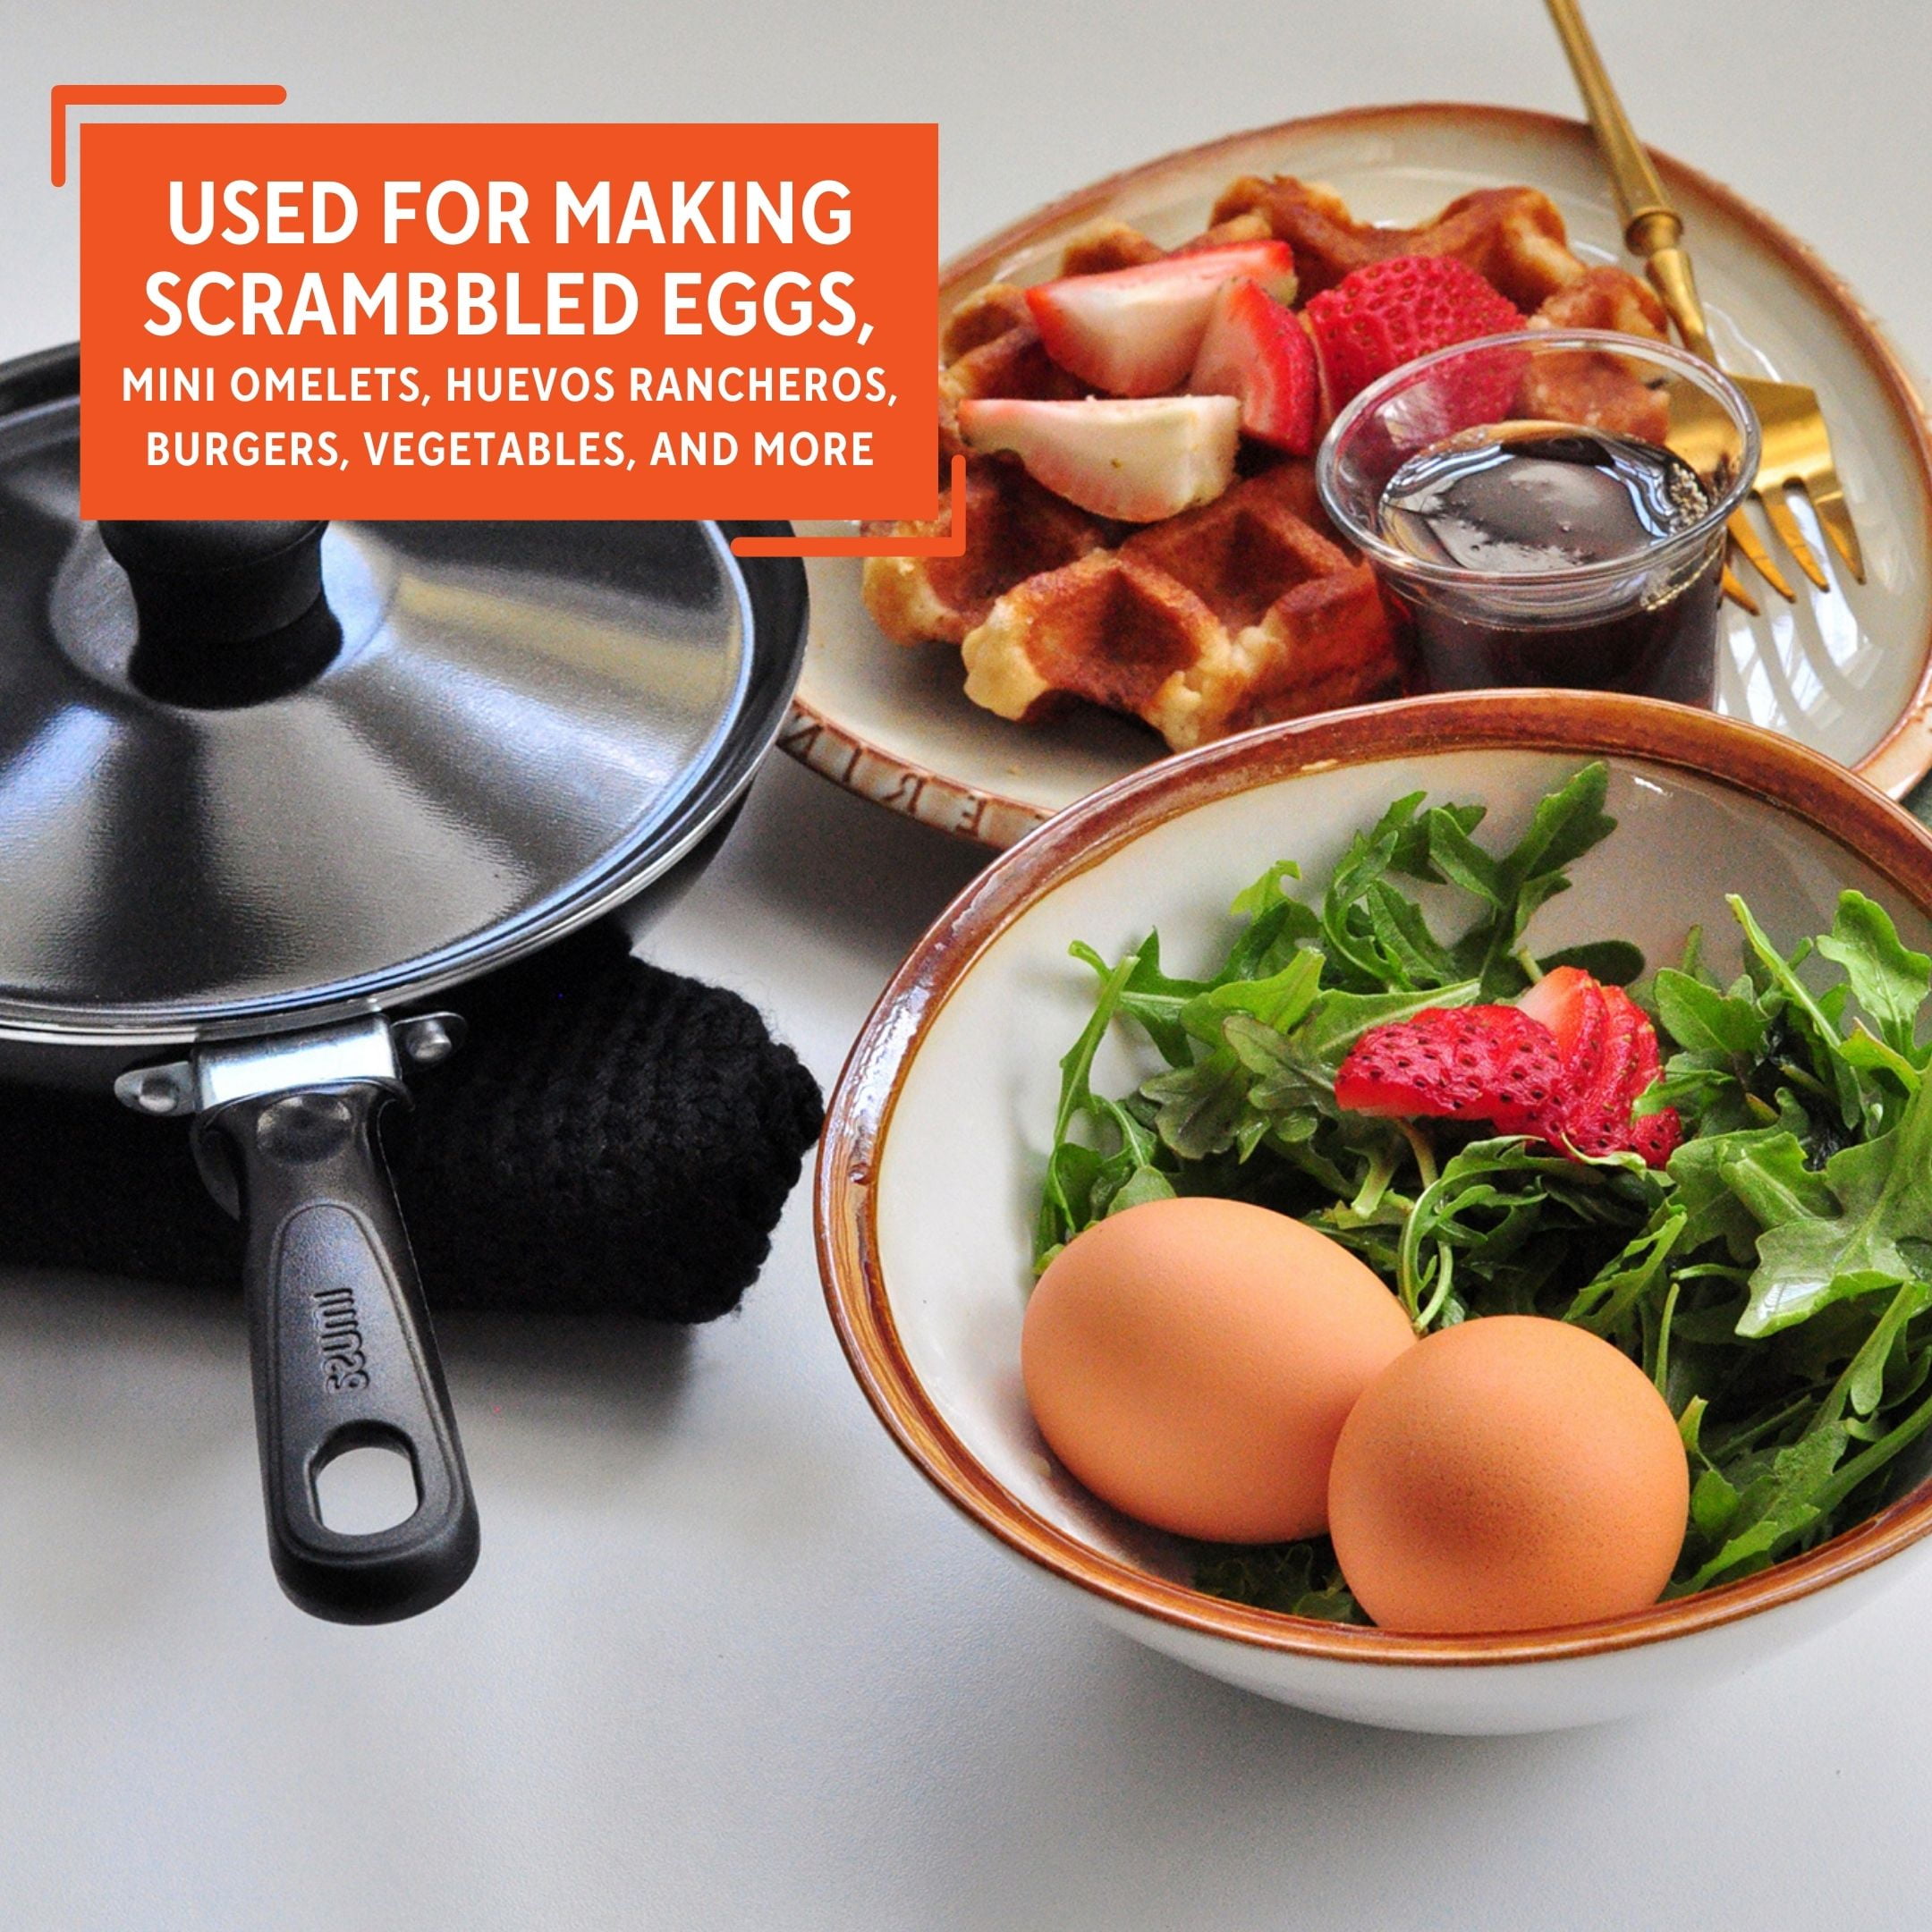 Imusa Mini Egg Pan With Handle : Target